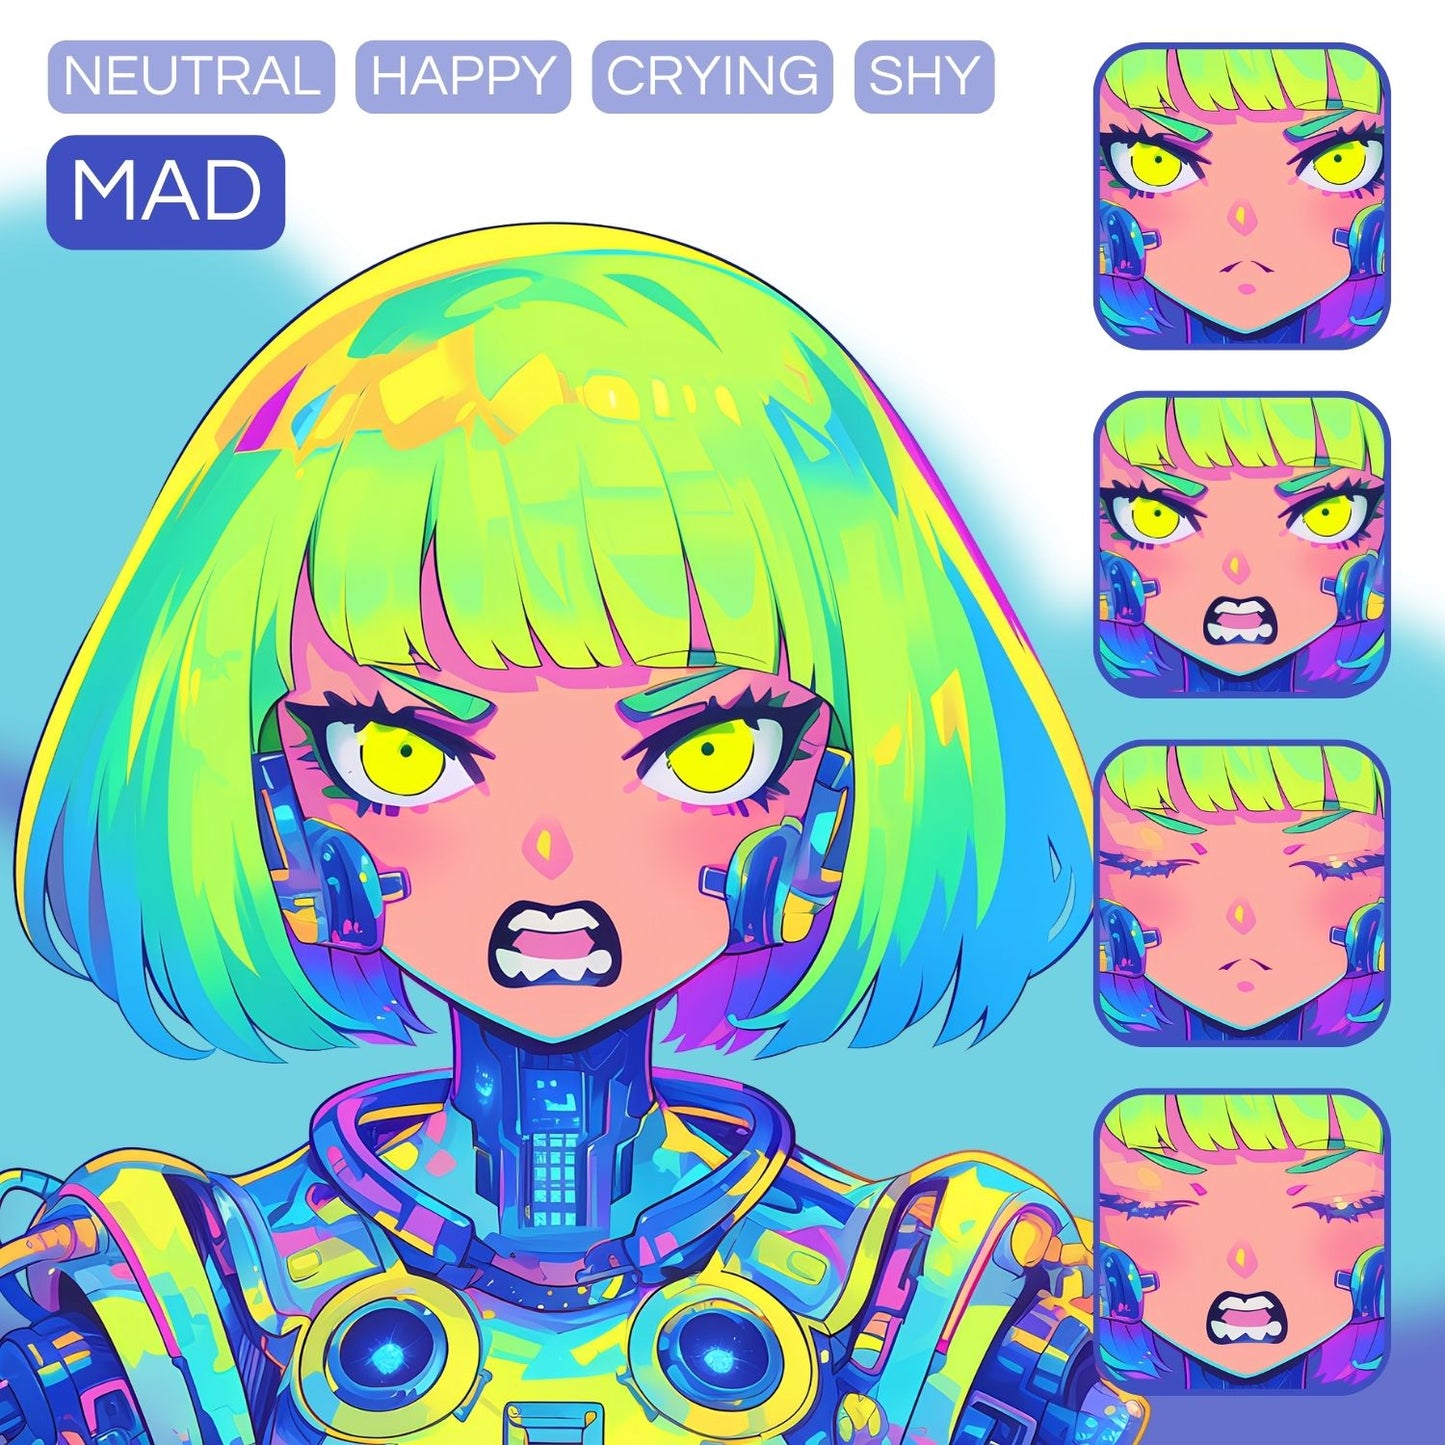 Cyborg Girl PNGTuber | Veadotube Avatar Download